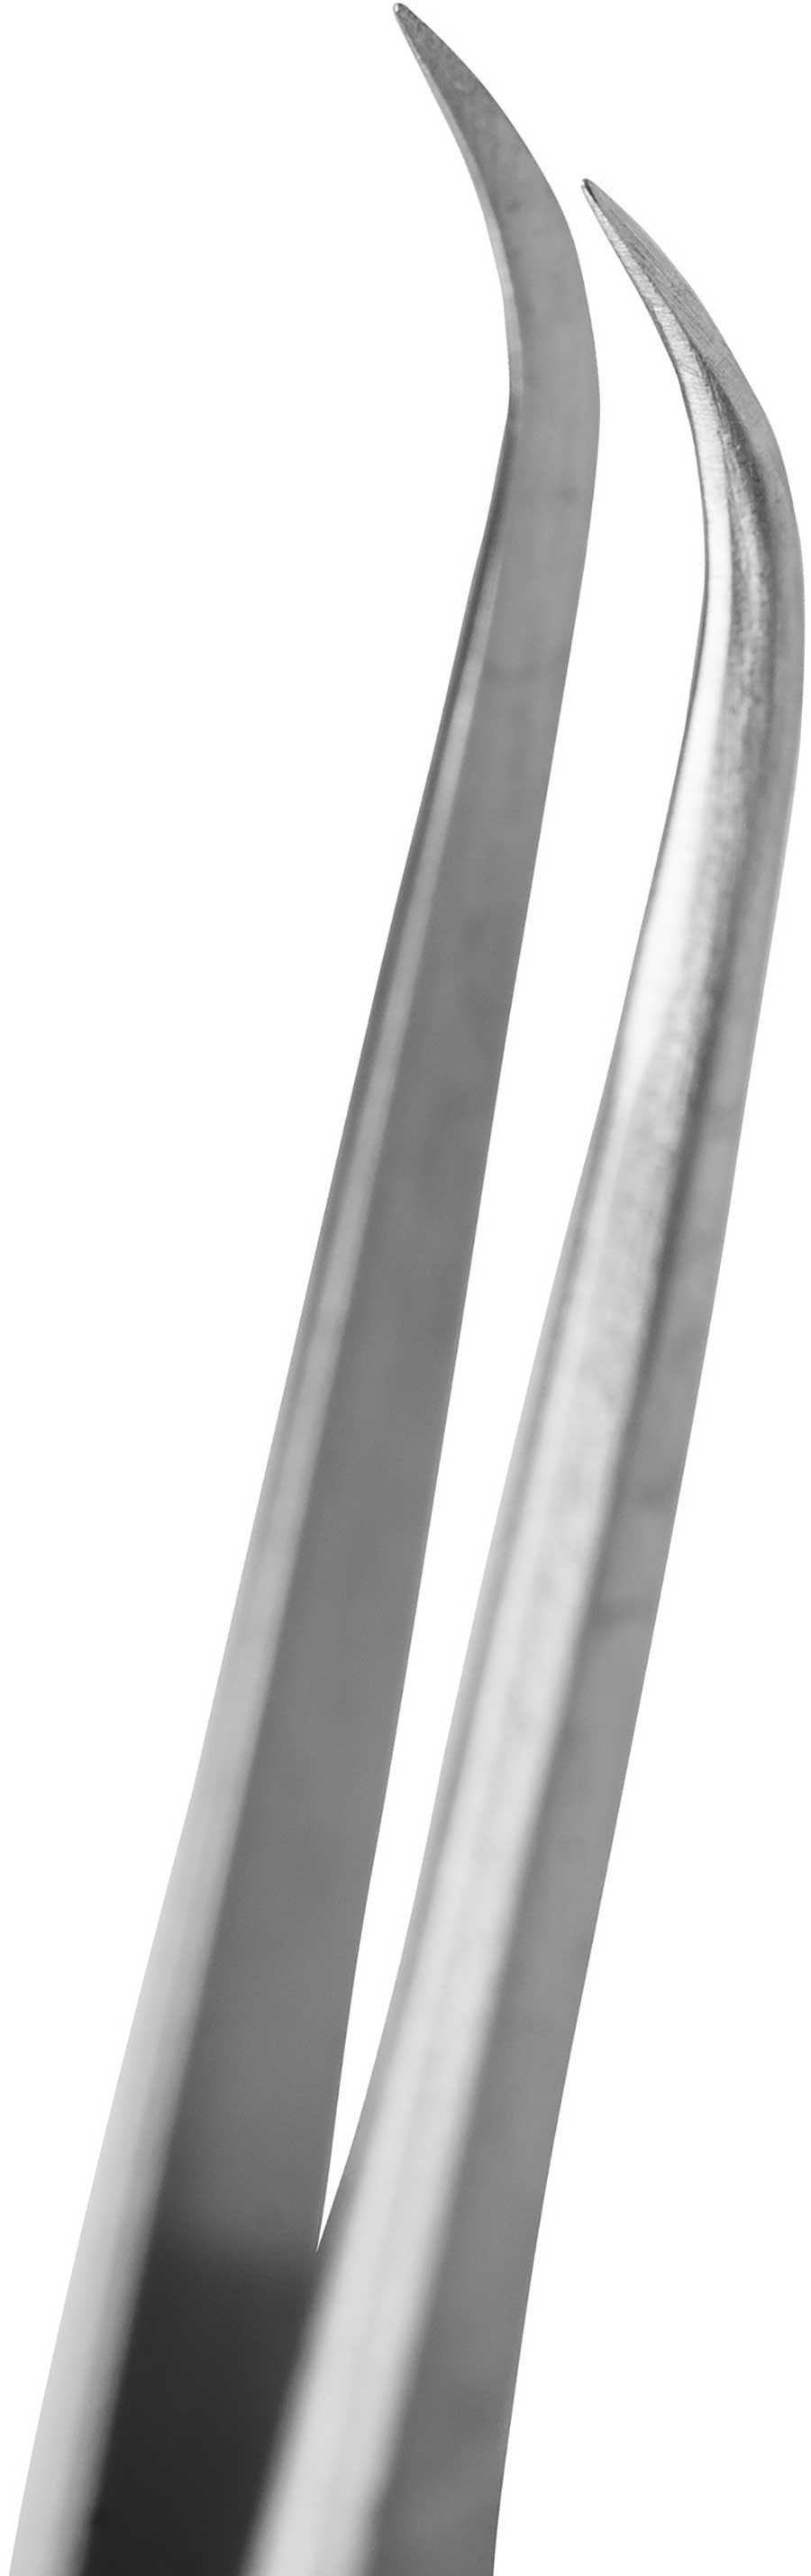 Nippon Nippers. Пинцет для наращивания ресниц, изогнутый, длина 125 мм. Ручная заточка.